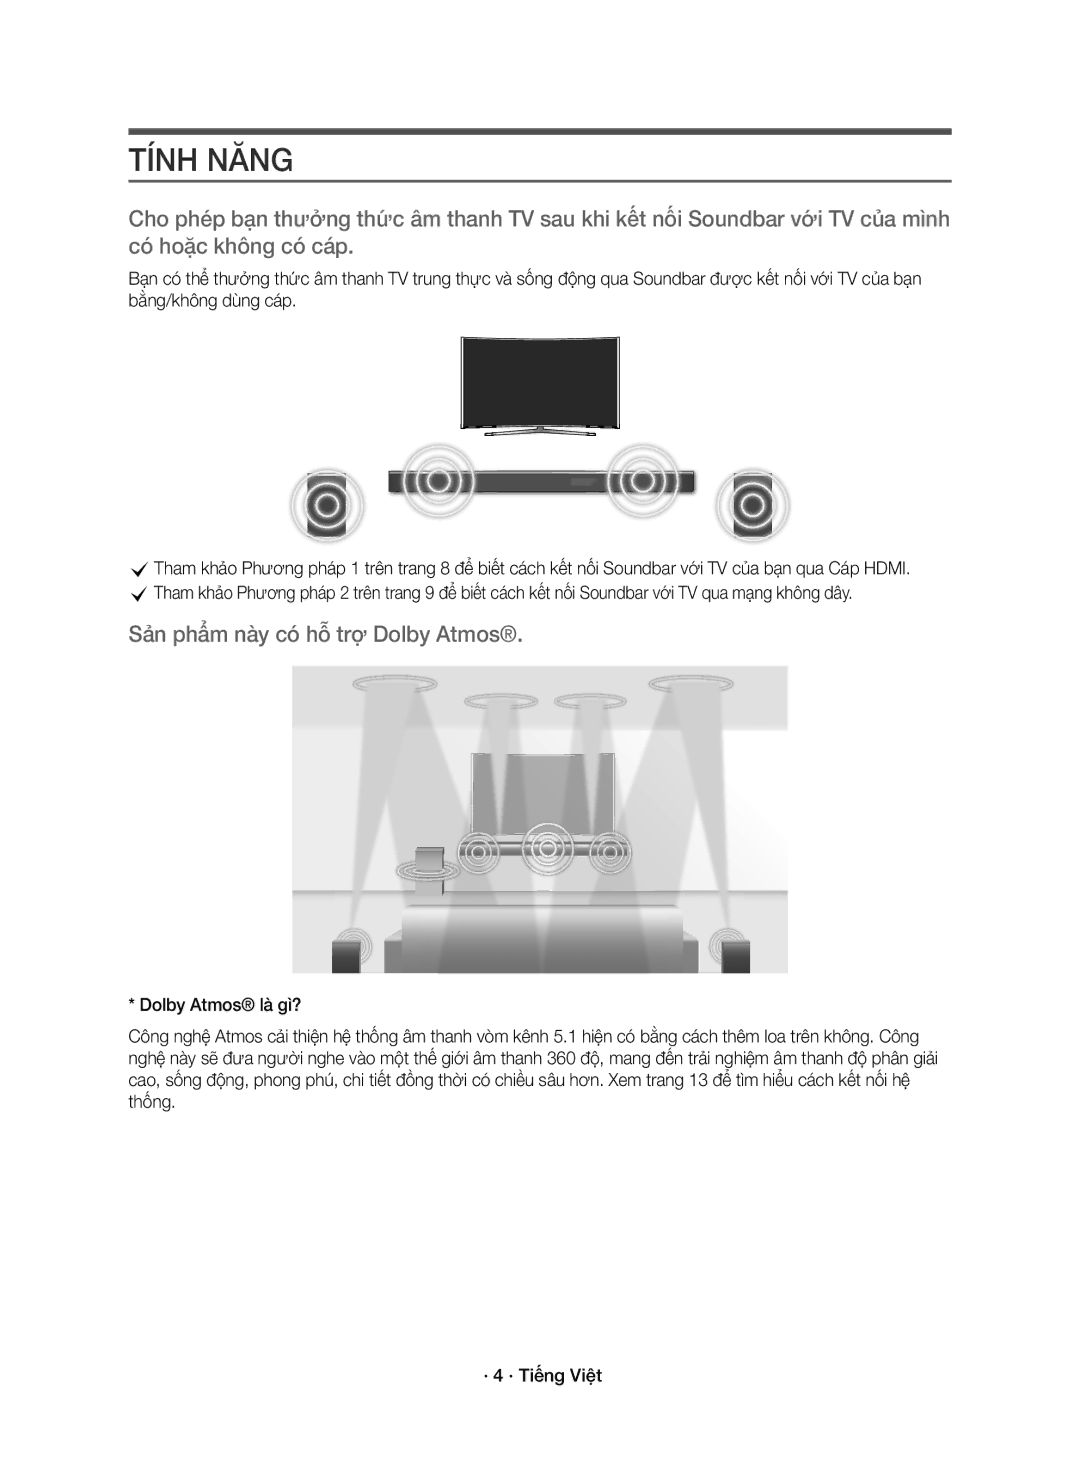 Samsung HW-K950/XV manual Tính Năng, Sản phẩm này có hỗ trợ Dolby Atmos 